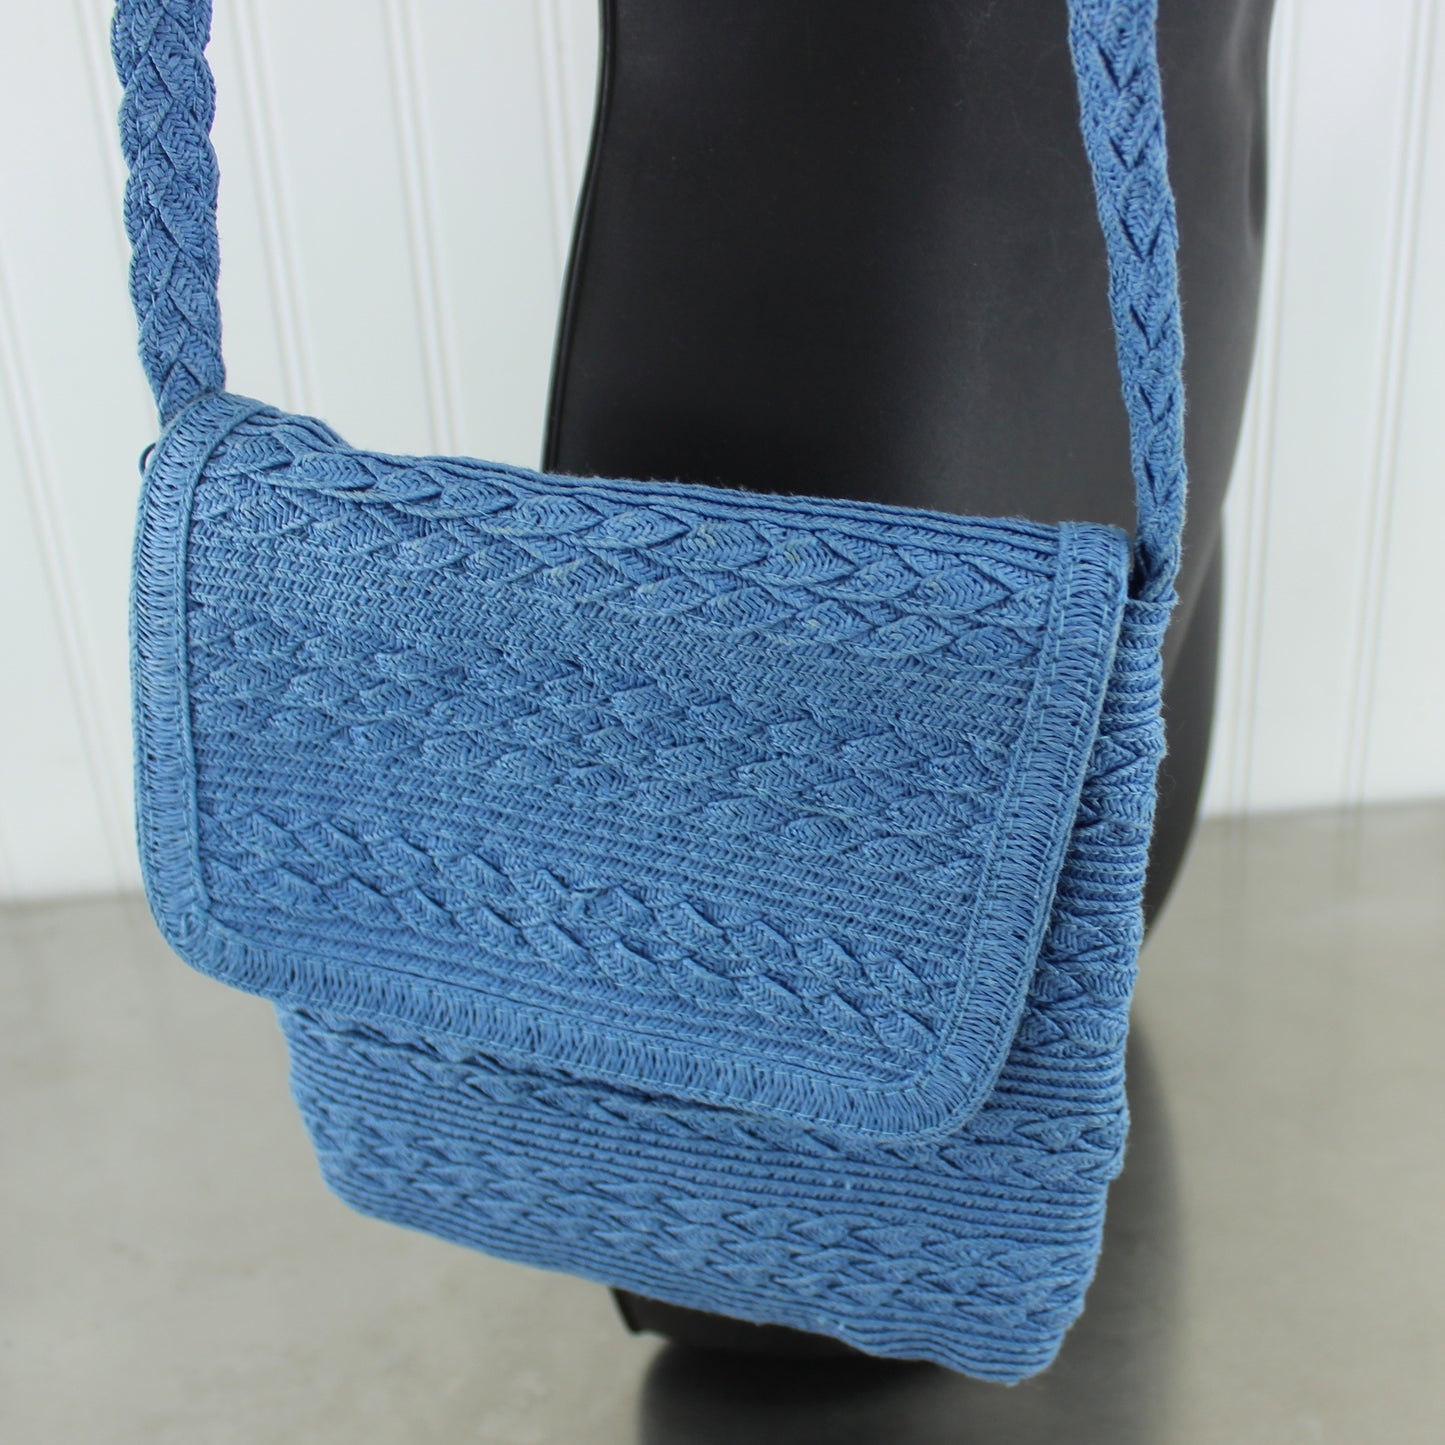 Capelli Small Shoulder Handbag Blue Woven Paper Handbag Unique blue sky color